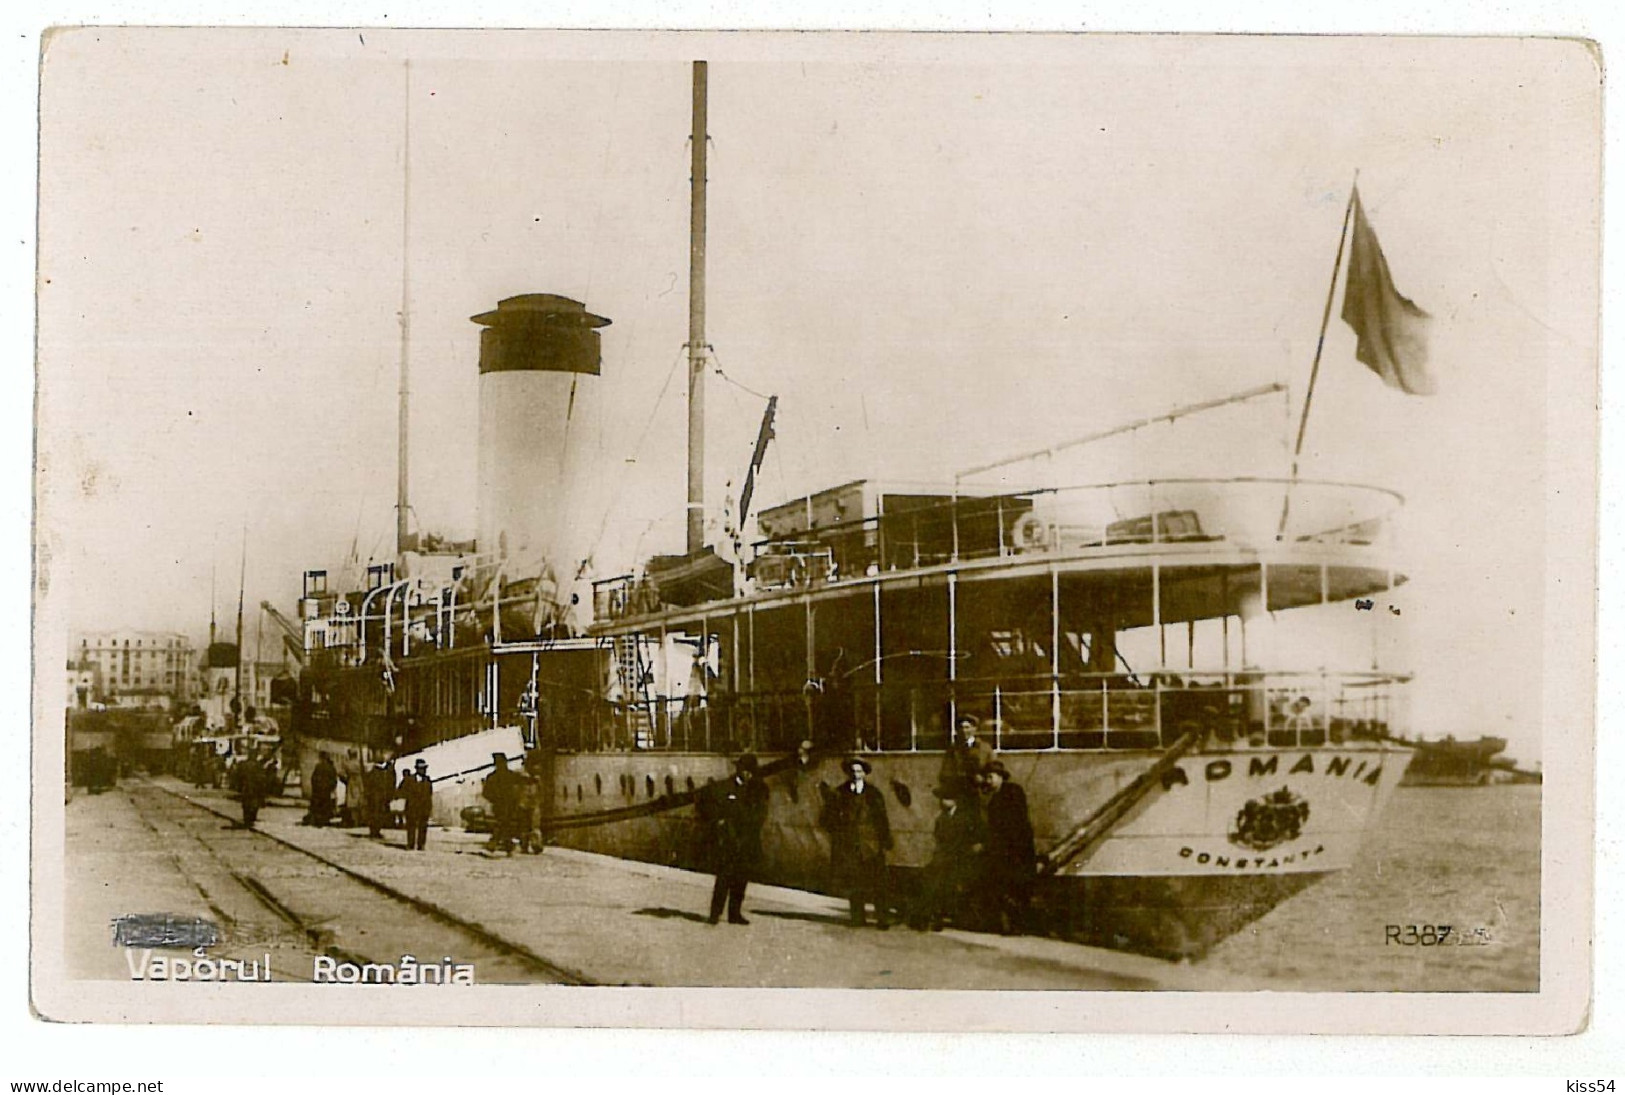 RO 39 - 4220 CONSTANTA, Ship, Romania - Old Postcard - Used - 1931 - Rumänien